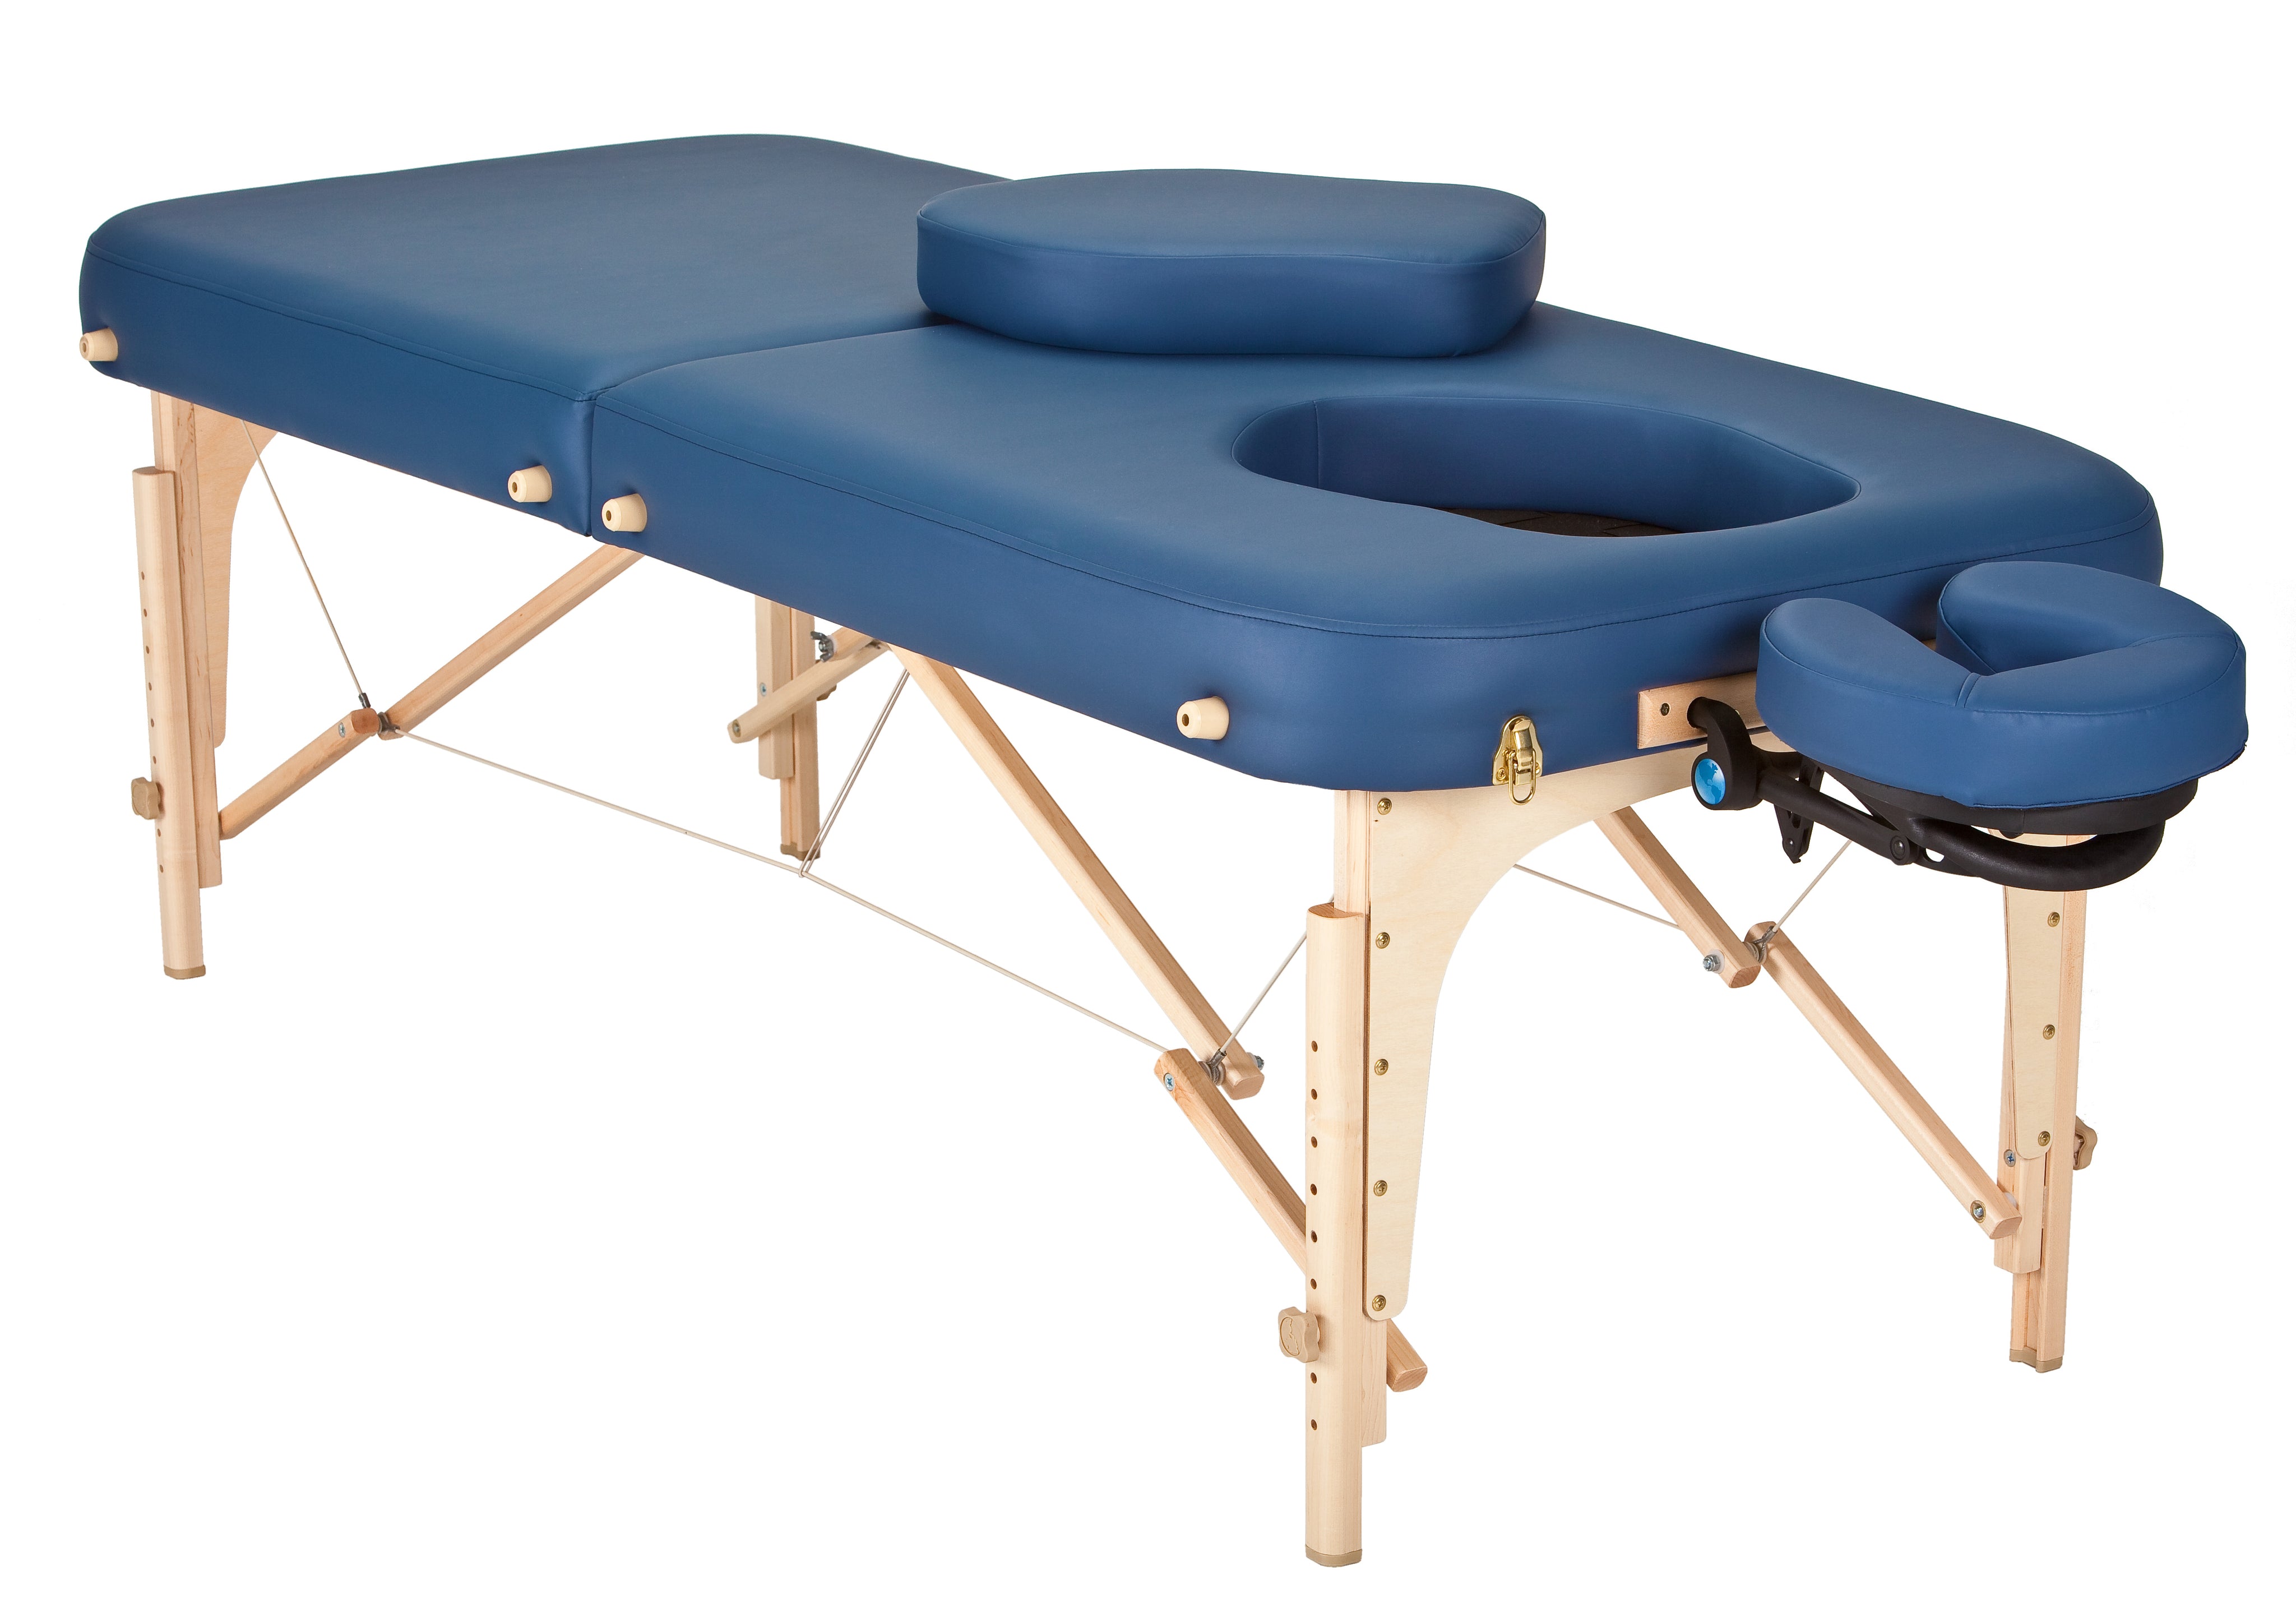 Массажный стол с отверстием. Earthlite массажный стол. Массажный стол с дыркой. Стол для детского массажа. Массажный стол для беременных.